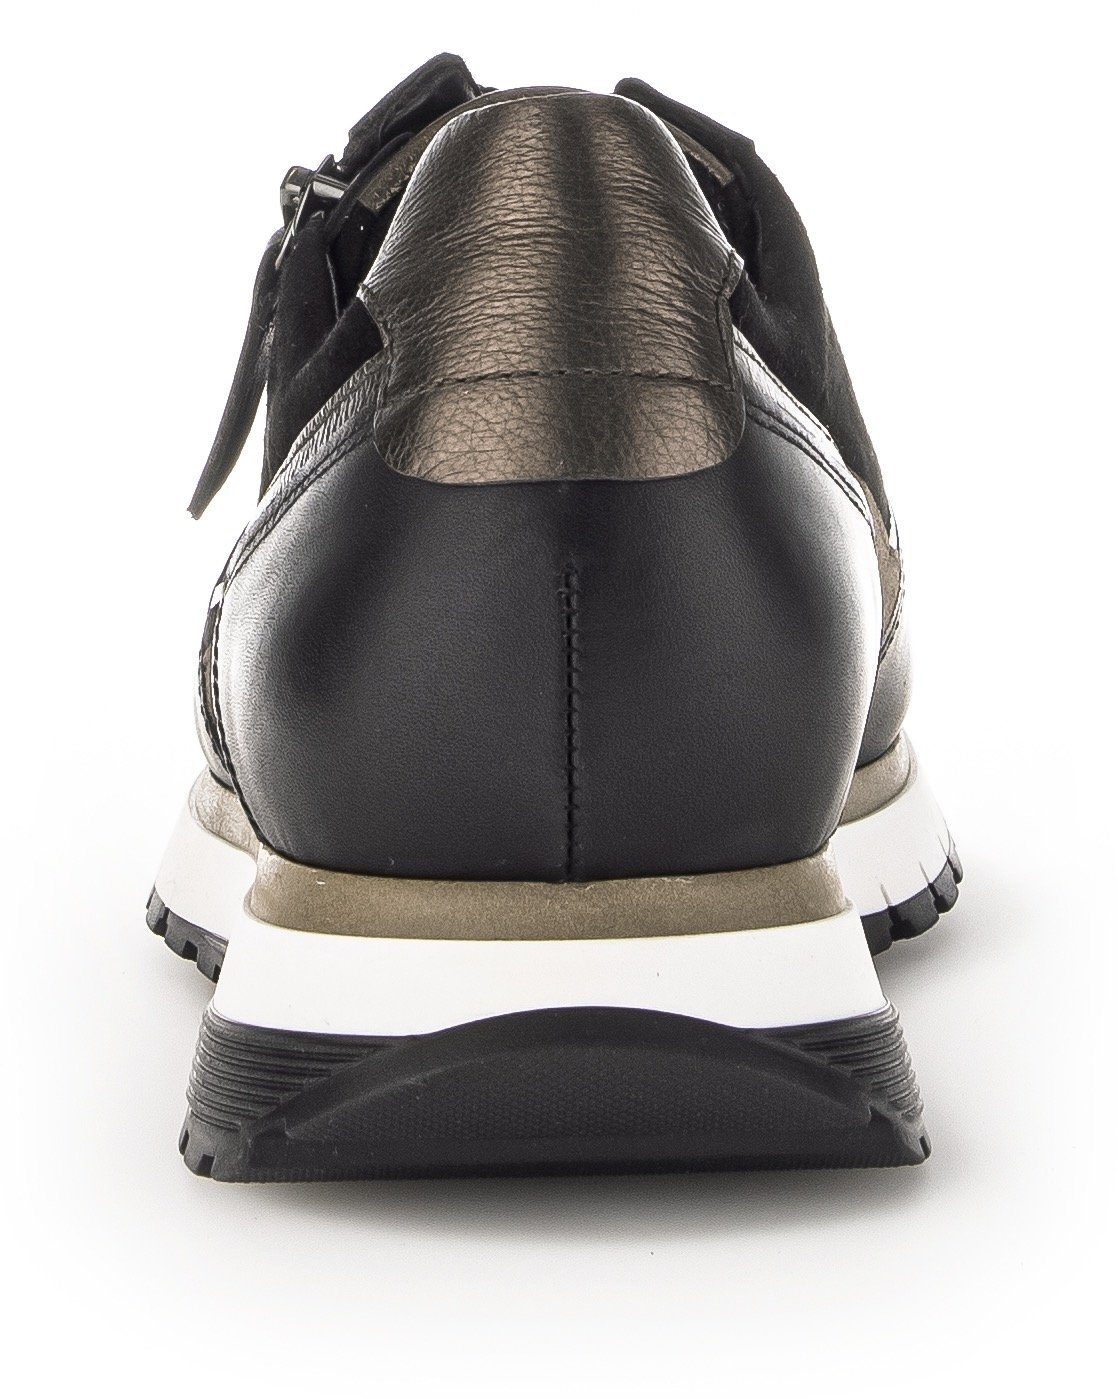 Gabor Turin Keilsneaker Komfort-Weite schwarz-taupe H in (sehr weit)